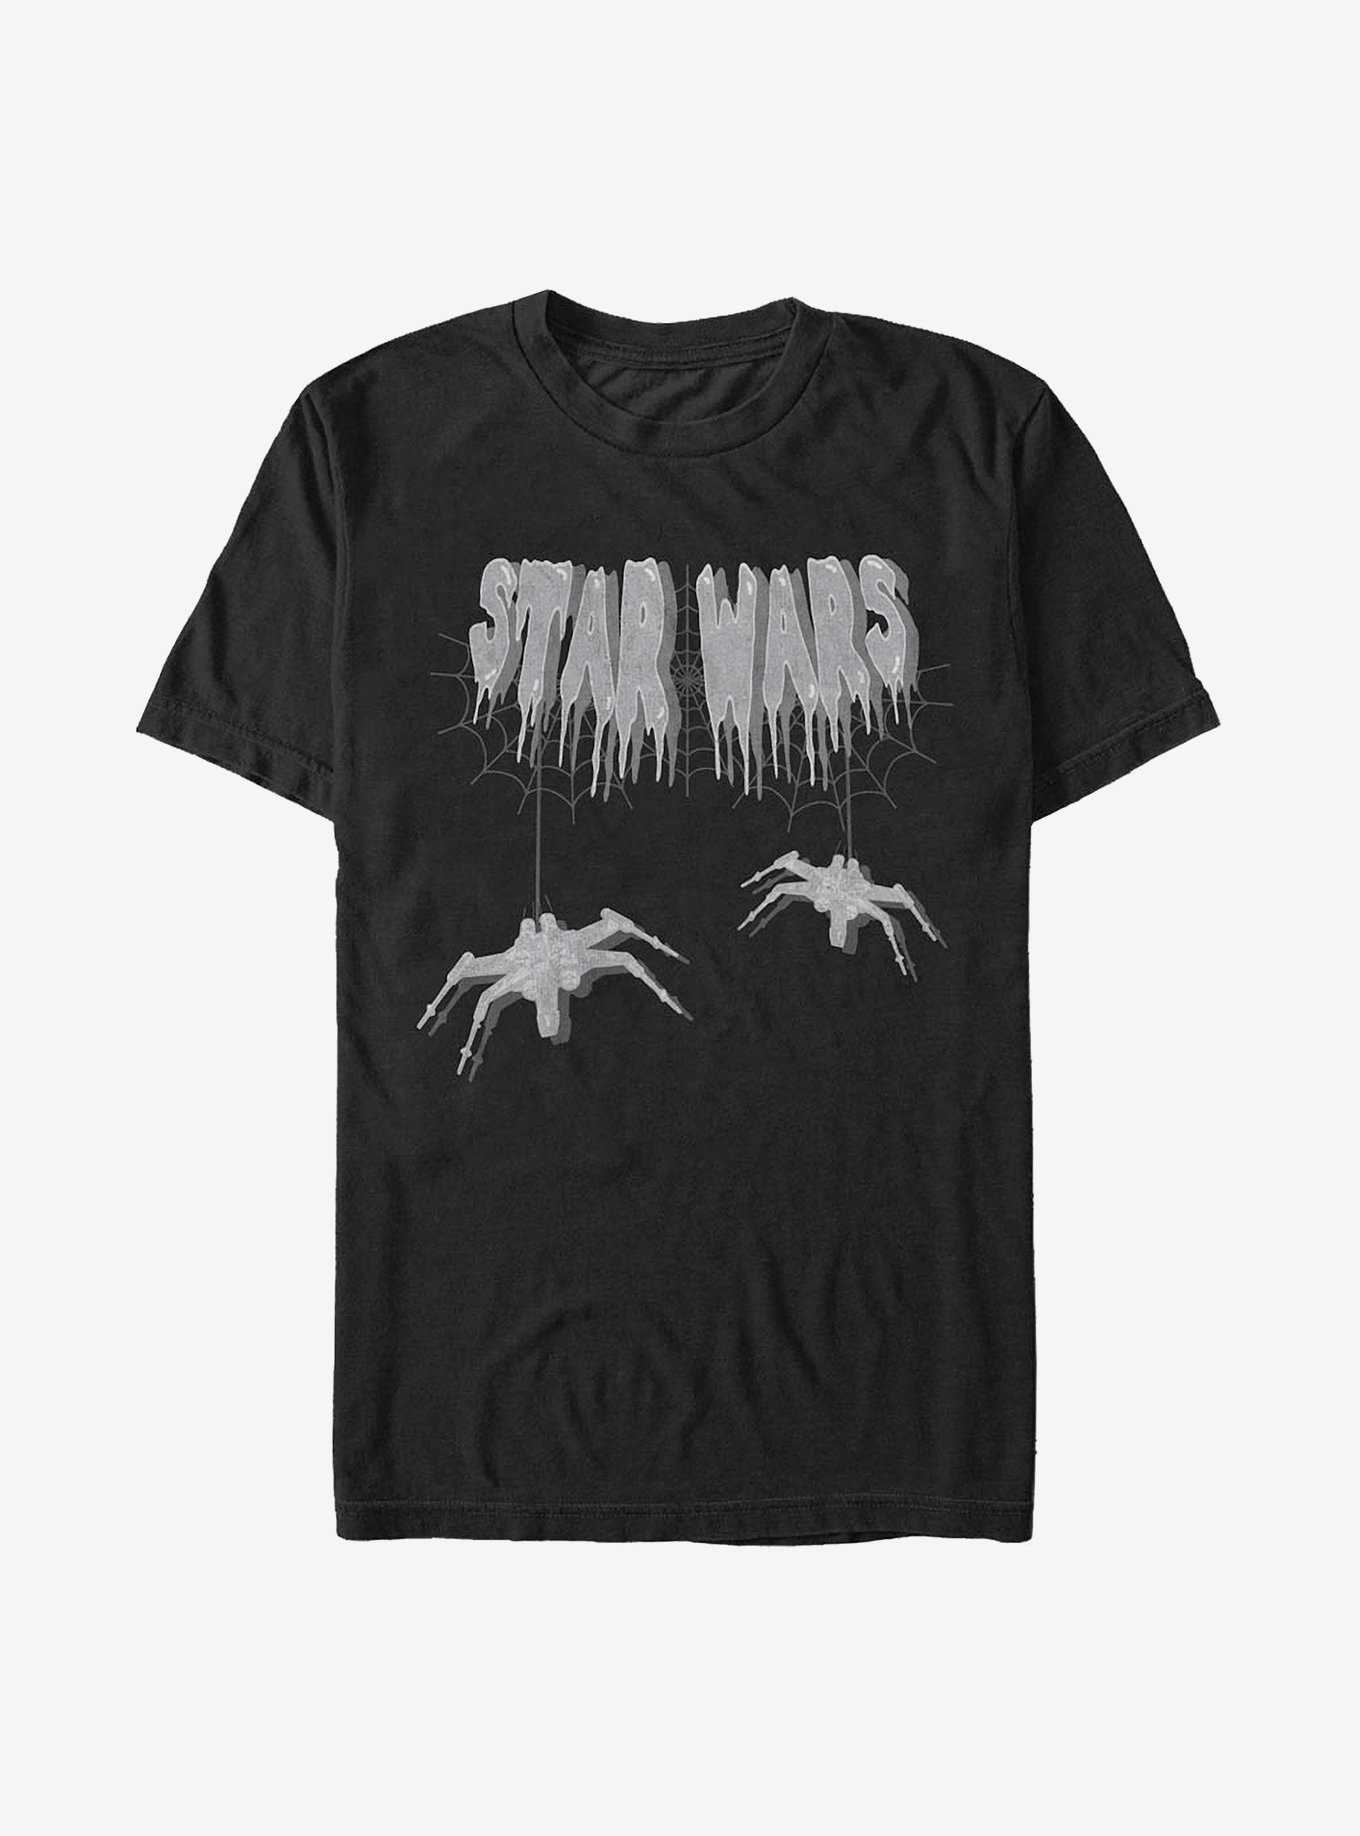 Star Wars Spooky Star Wars T-Shirt, , hi-res